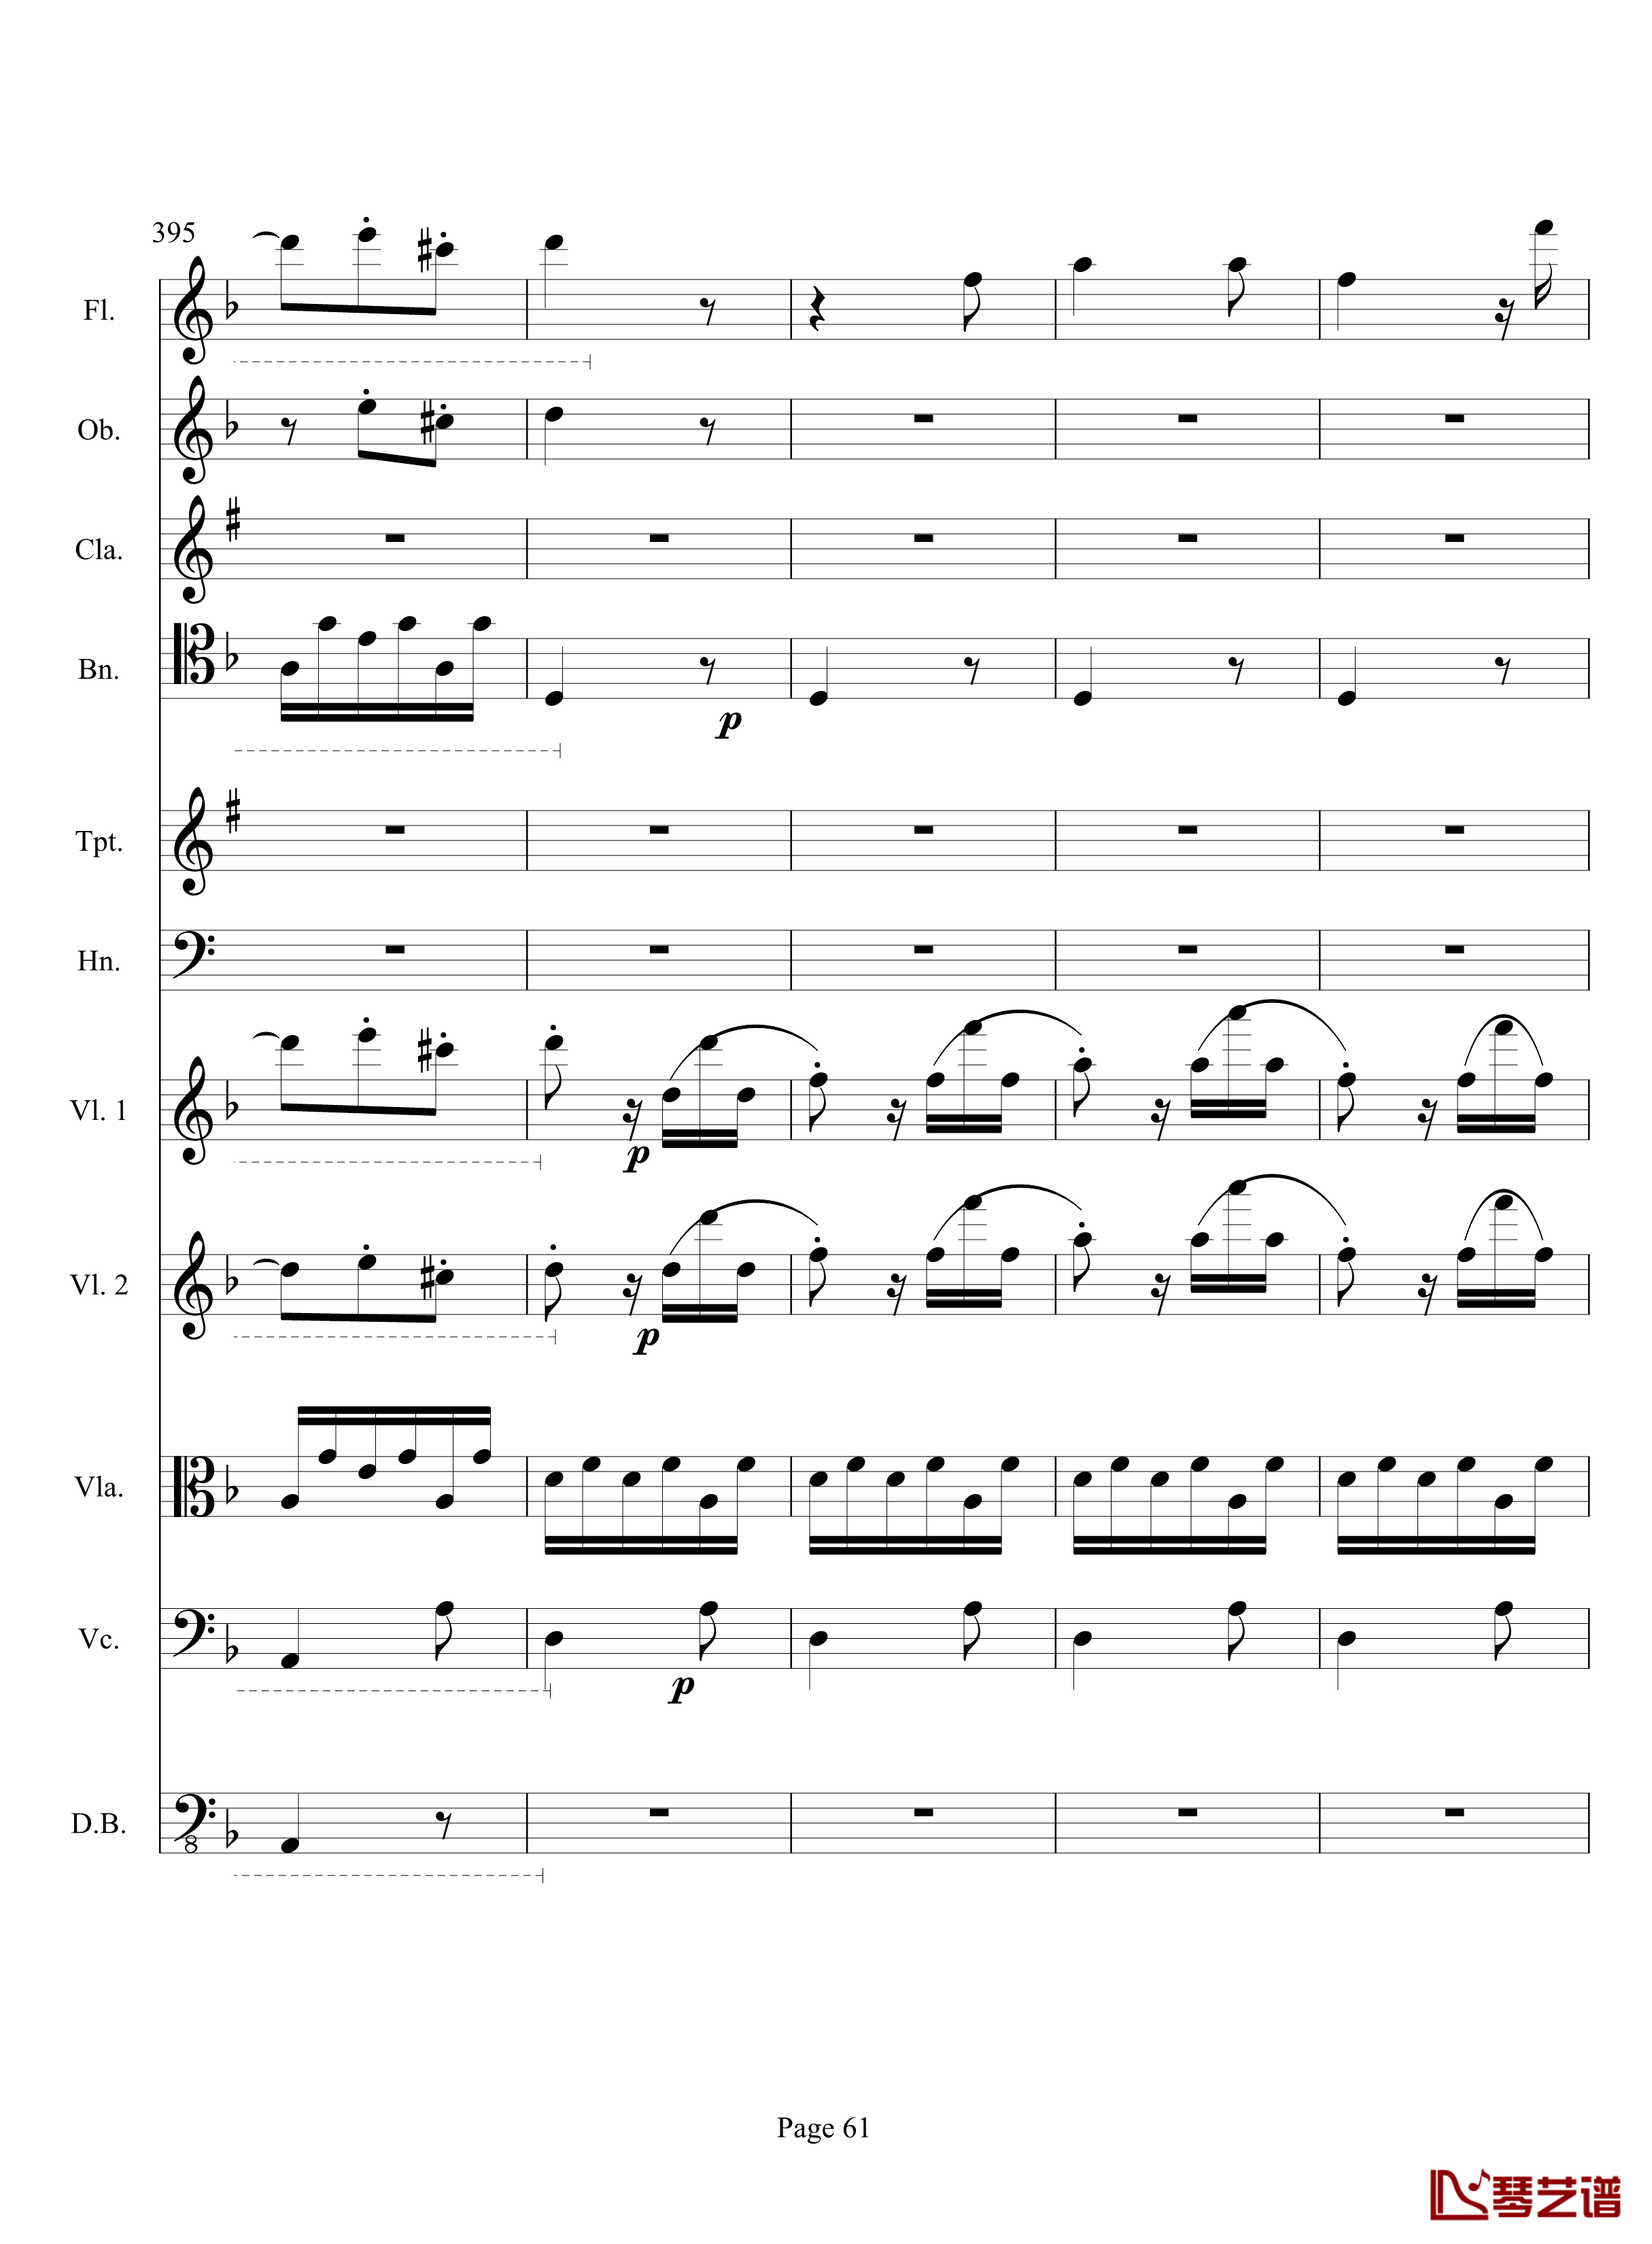 奏鸣曲之交响钢琴谱-第17首-Ⅲ-贝多芬-beethoven61